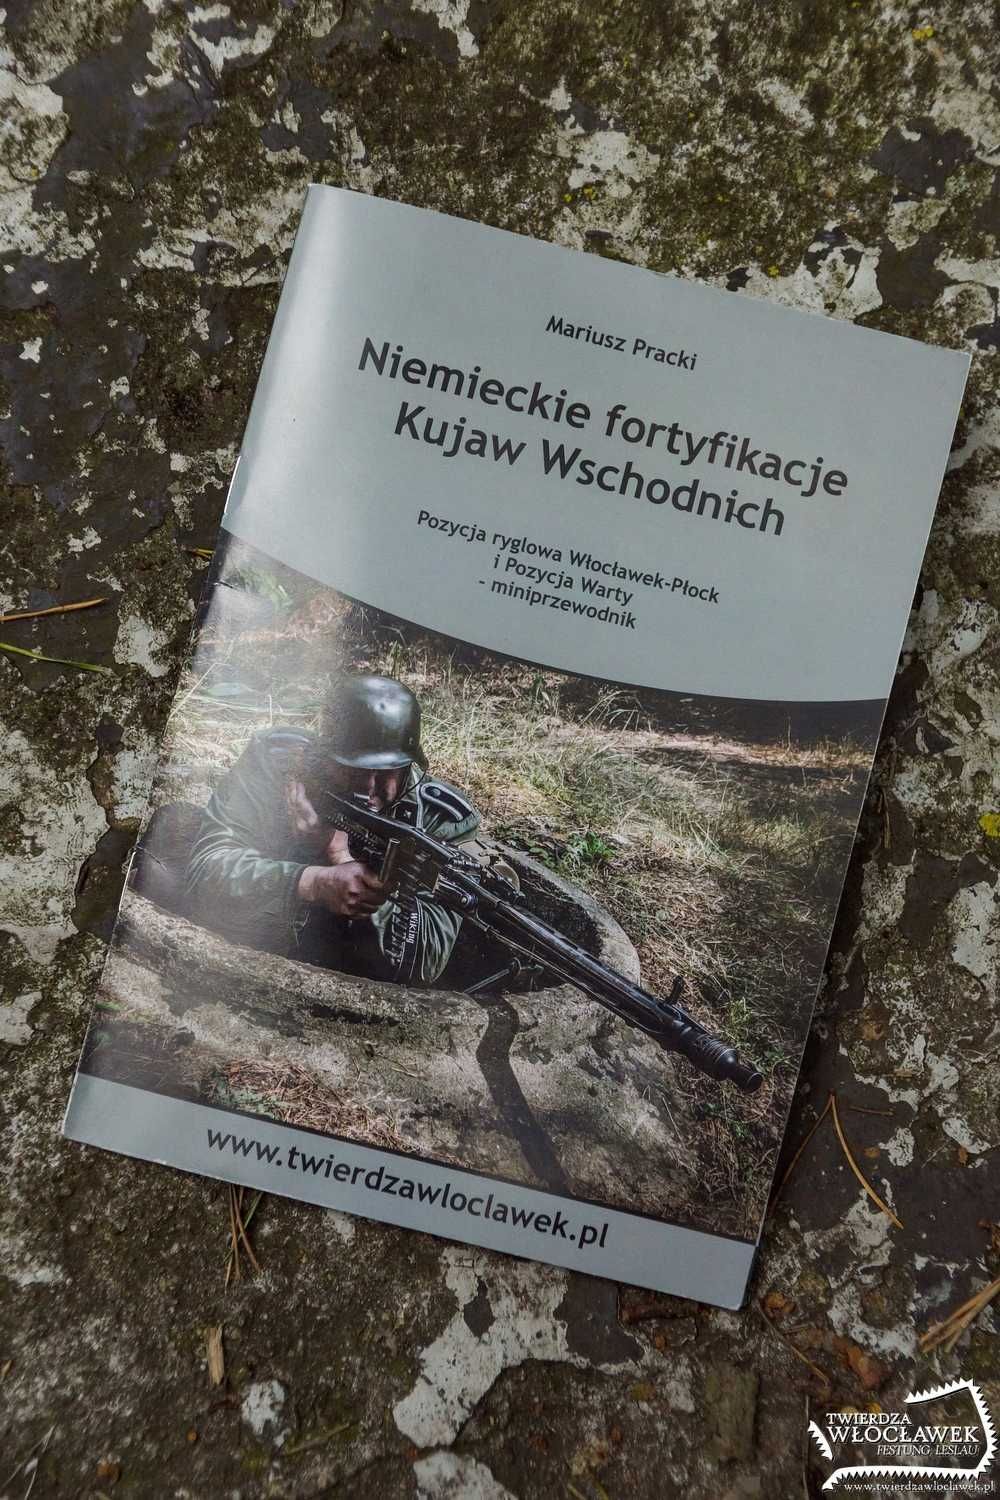 Niemieckie fortyfikacje Kujaw Wschodnich - Pracki - Twierdza Włocławek